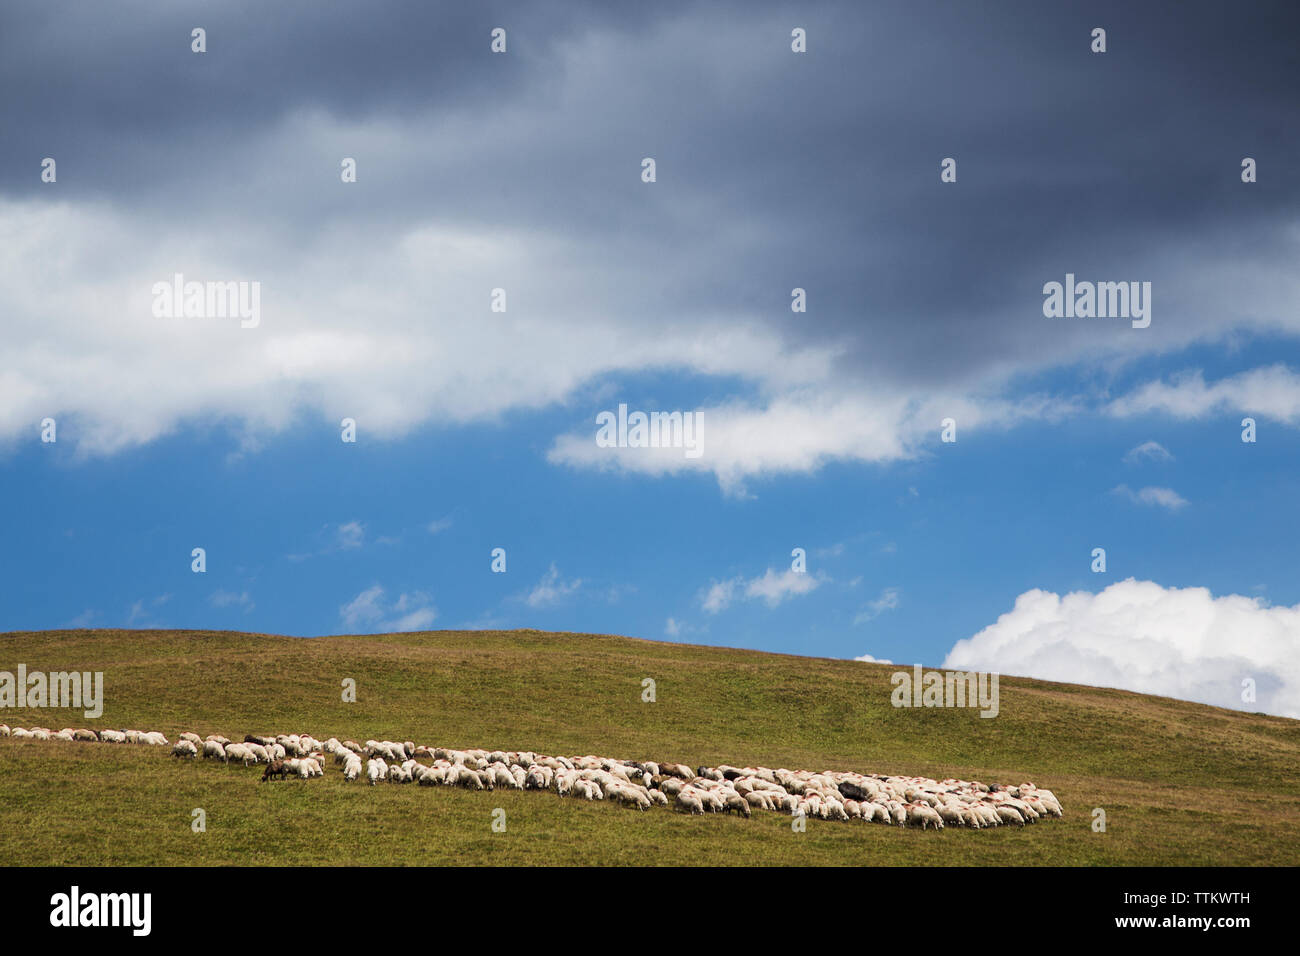 Troupeau de moutons sur field against cloudy sky Banque D'Images